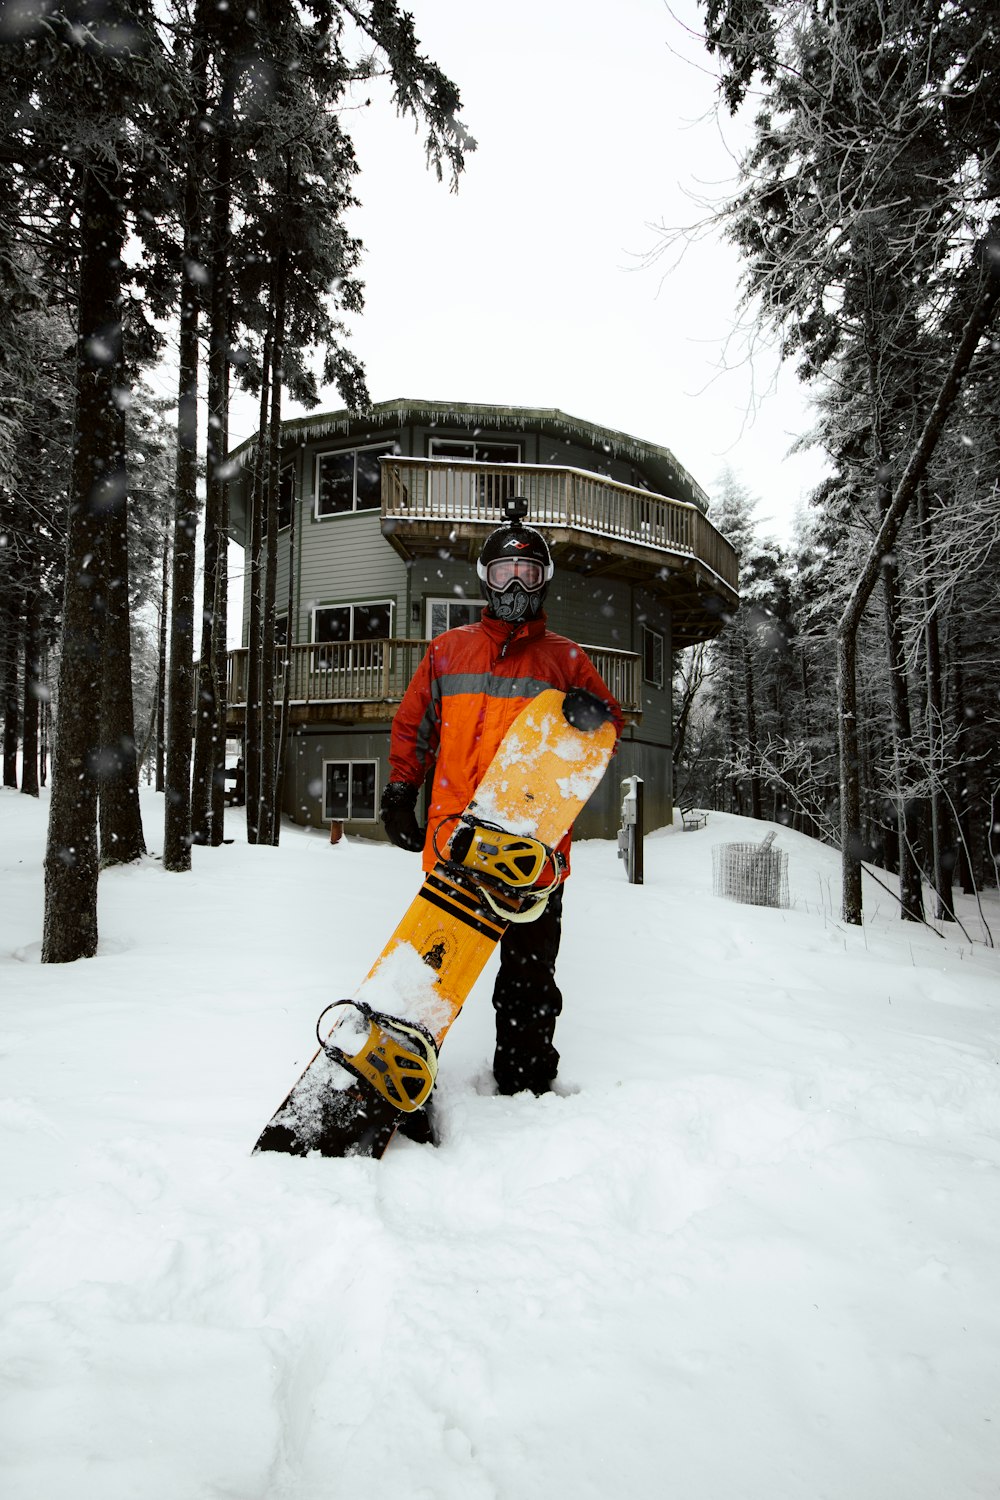 homme en veste orange et pantalon noir chevauchant sur un snowboard jaune sur un sol enneigé pendant